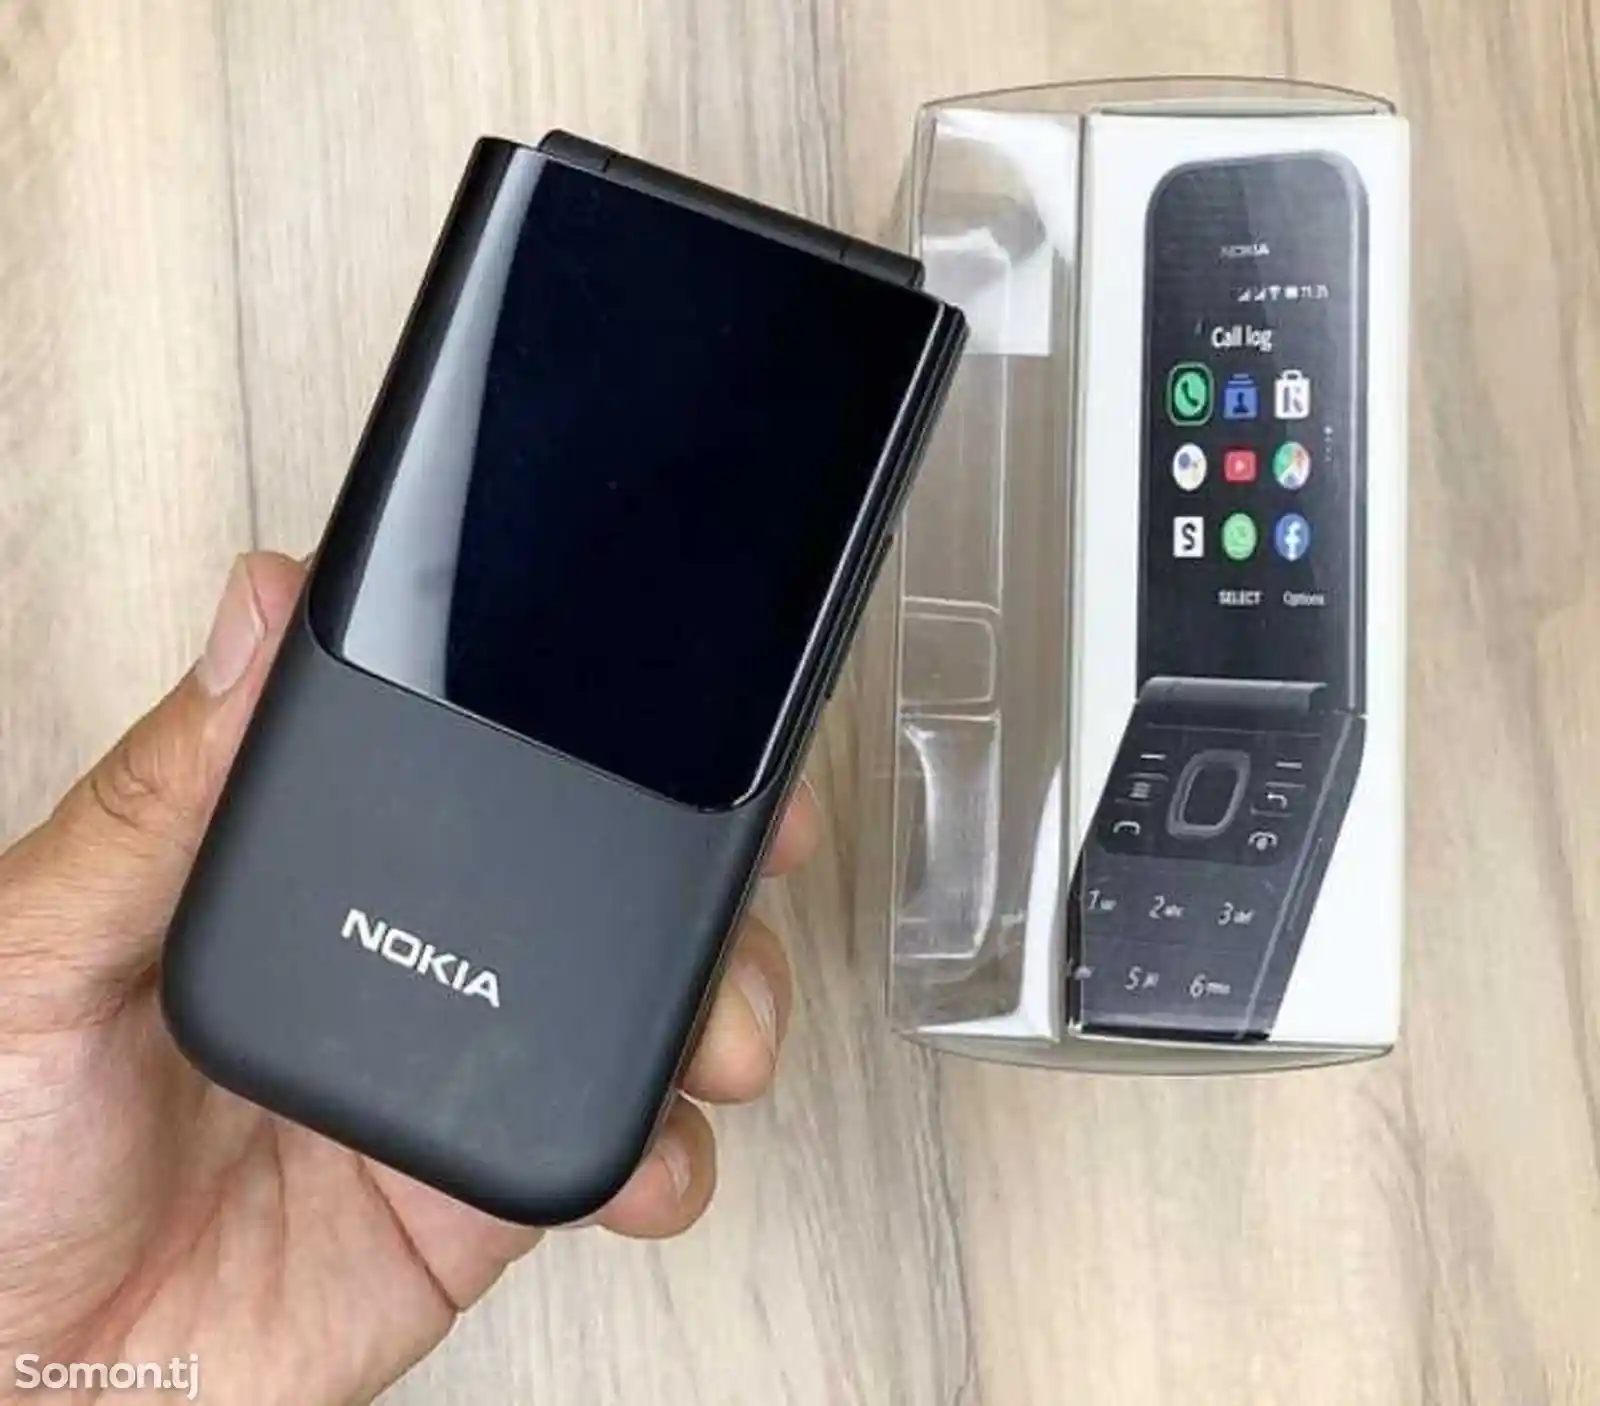 Nokia 2720-1